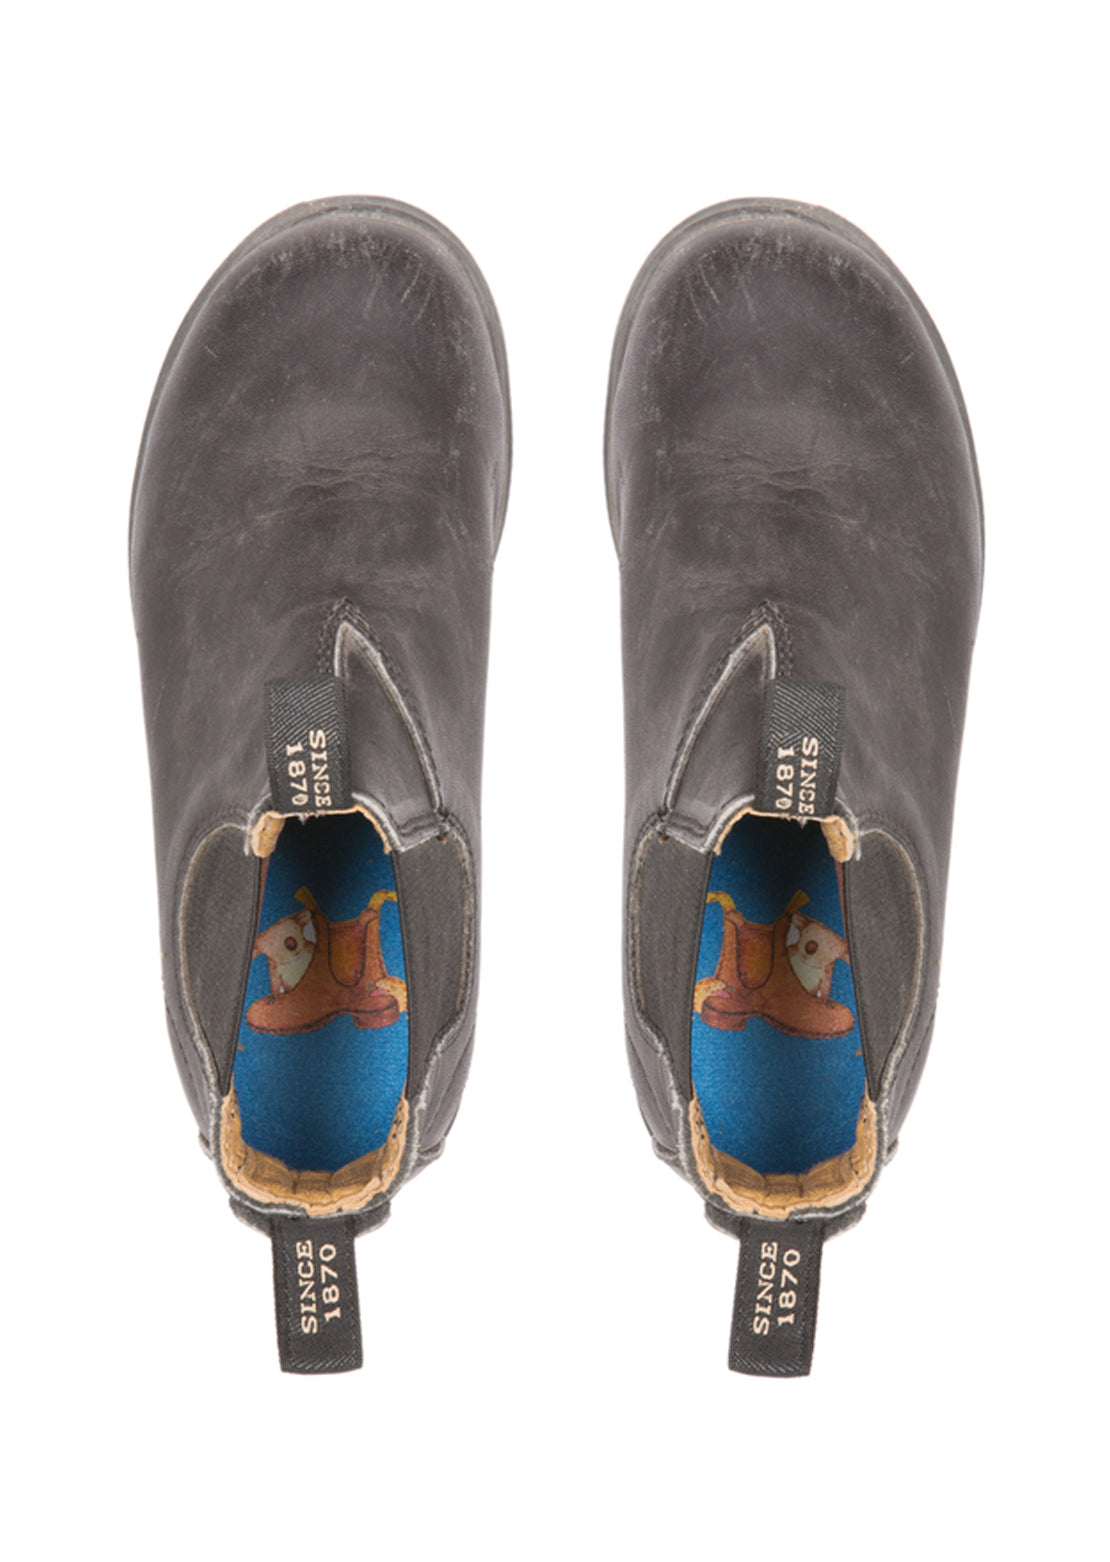 Blundstone 531 Junior Blunnies Boots (531) Black